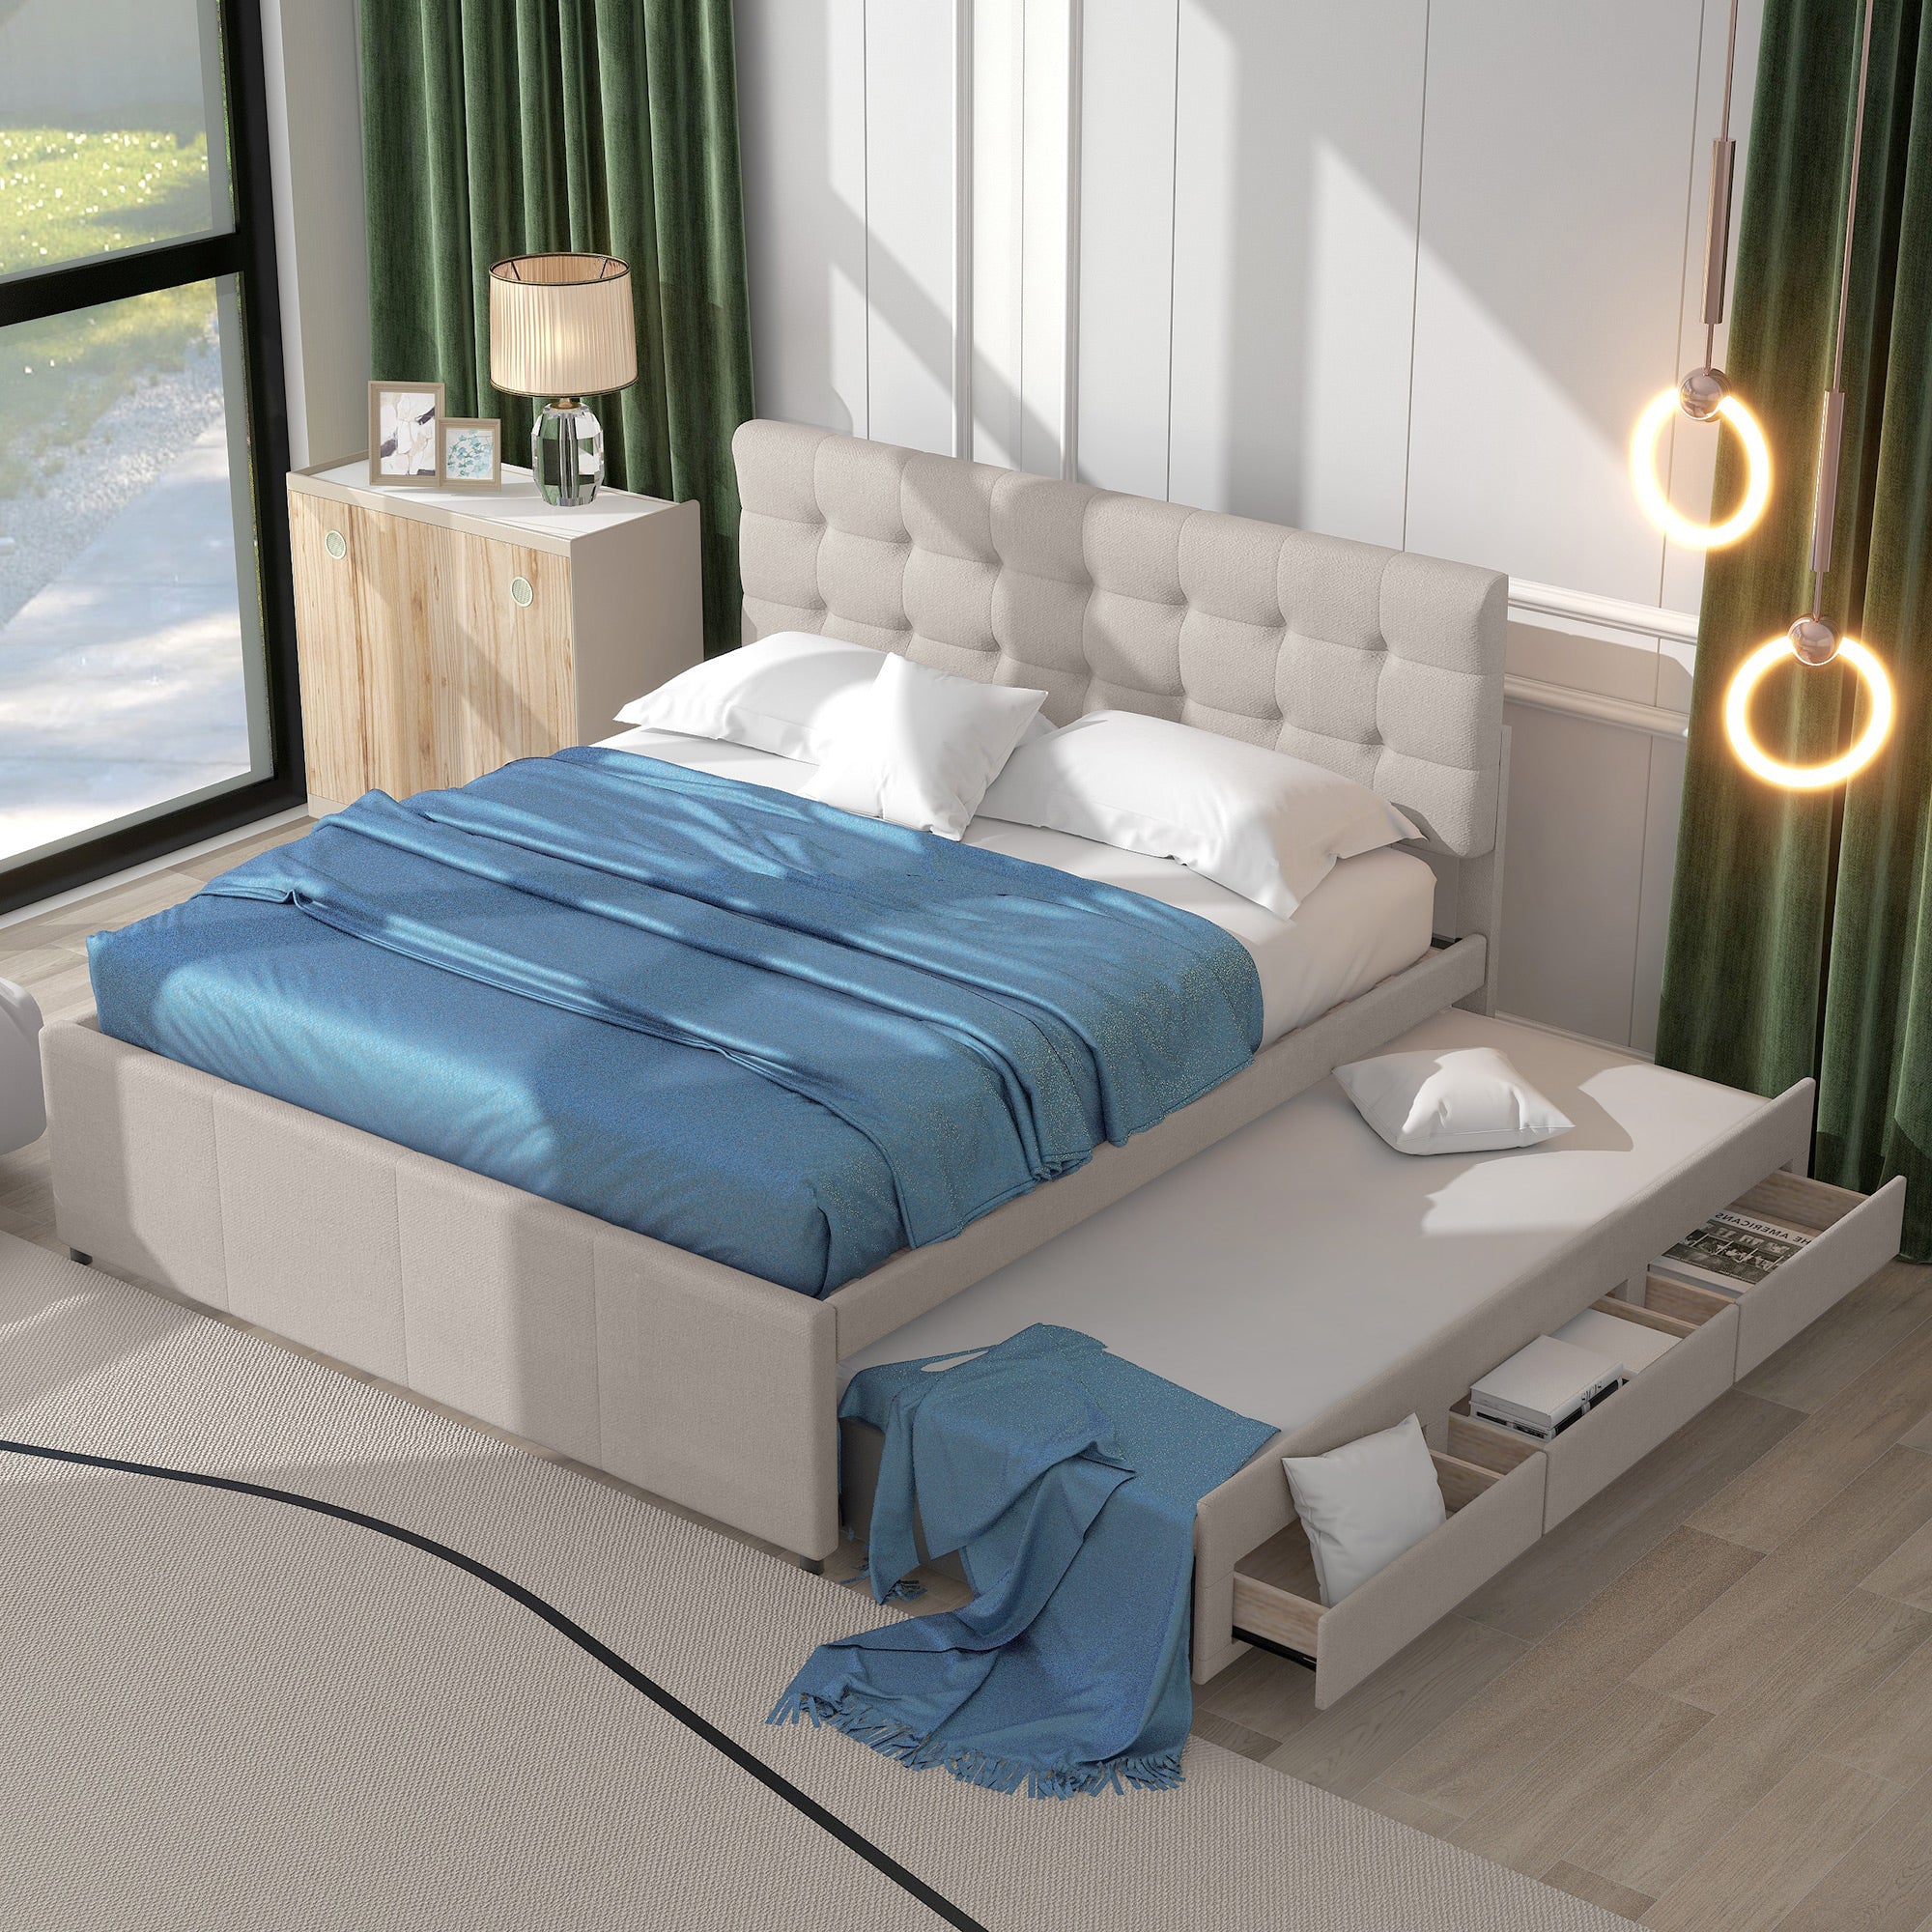 Polsterbett 140x200cm Doppelbett, Familienbett Bett mit drei Schubladen, ausziehbares Bett, Verstellbares Kopfteil, Leinen Beige